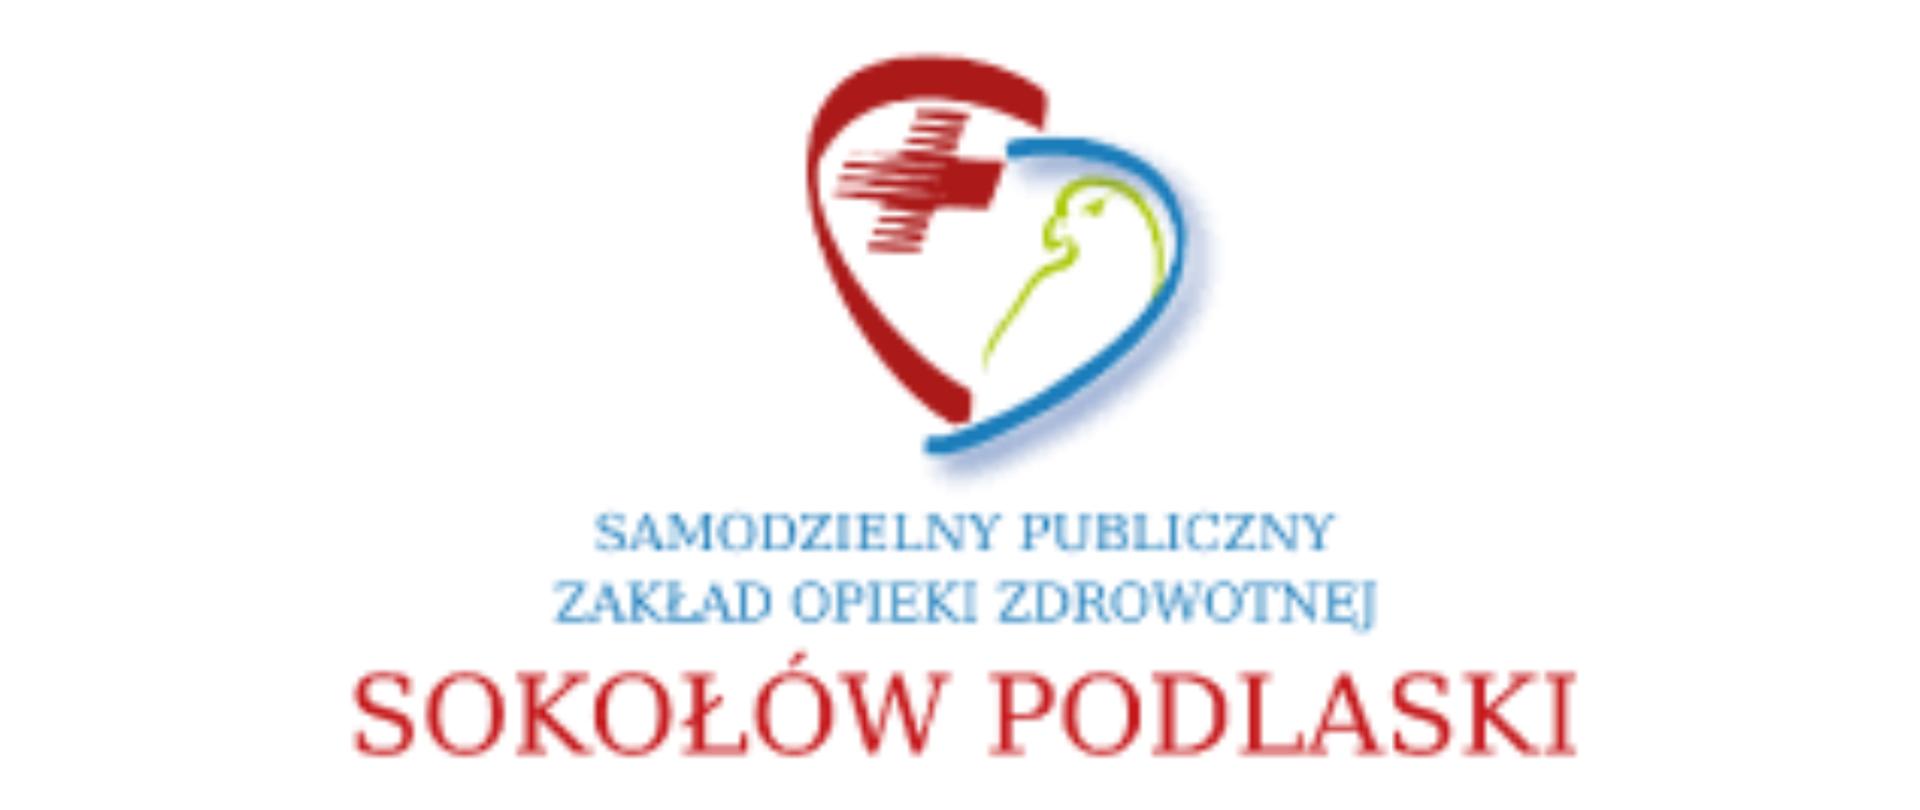 Logo Samodzielnego Publicznego Zakładu Opieki Zdrowotnej w Sokołowie Podlaskim